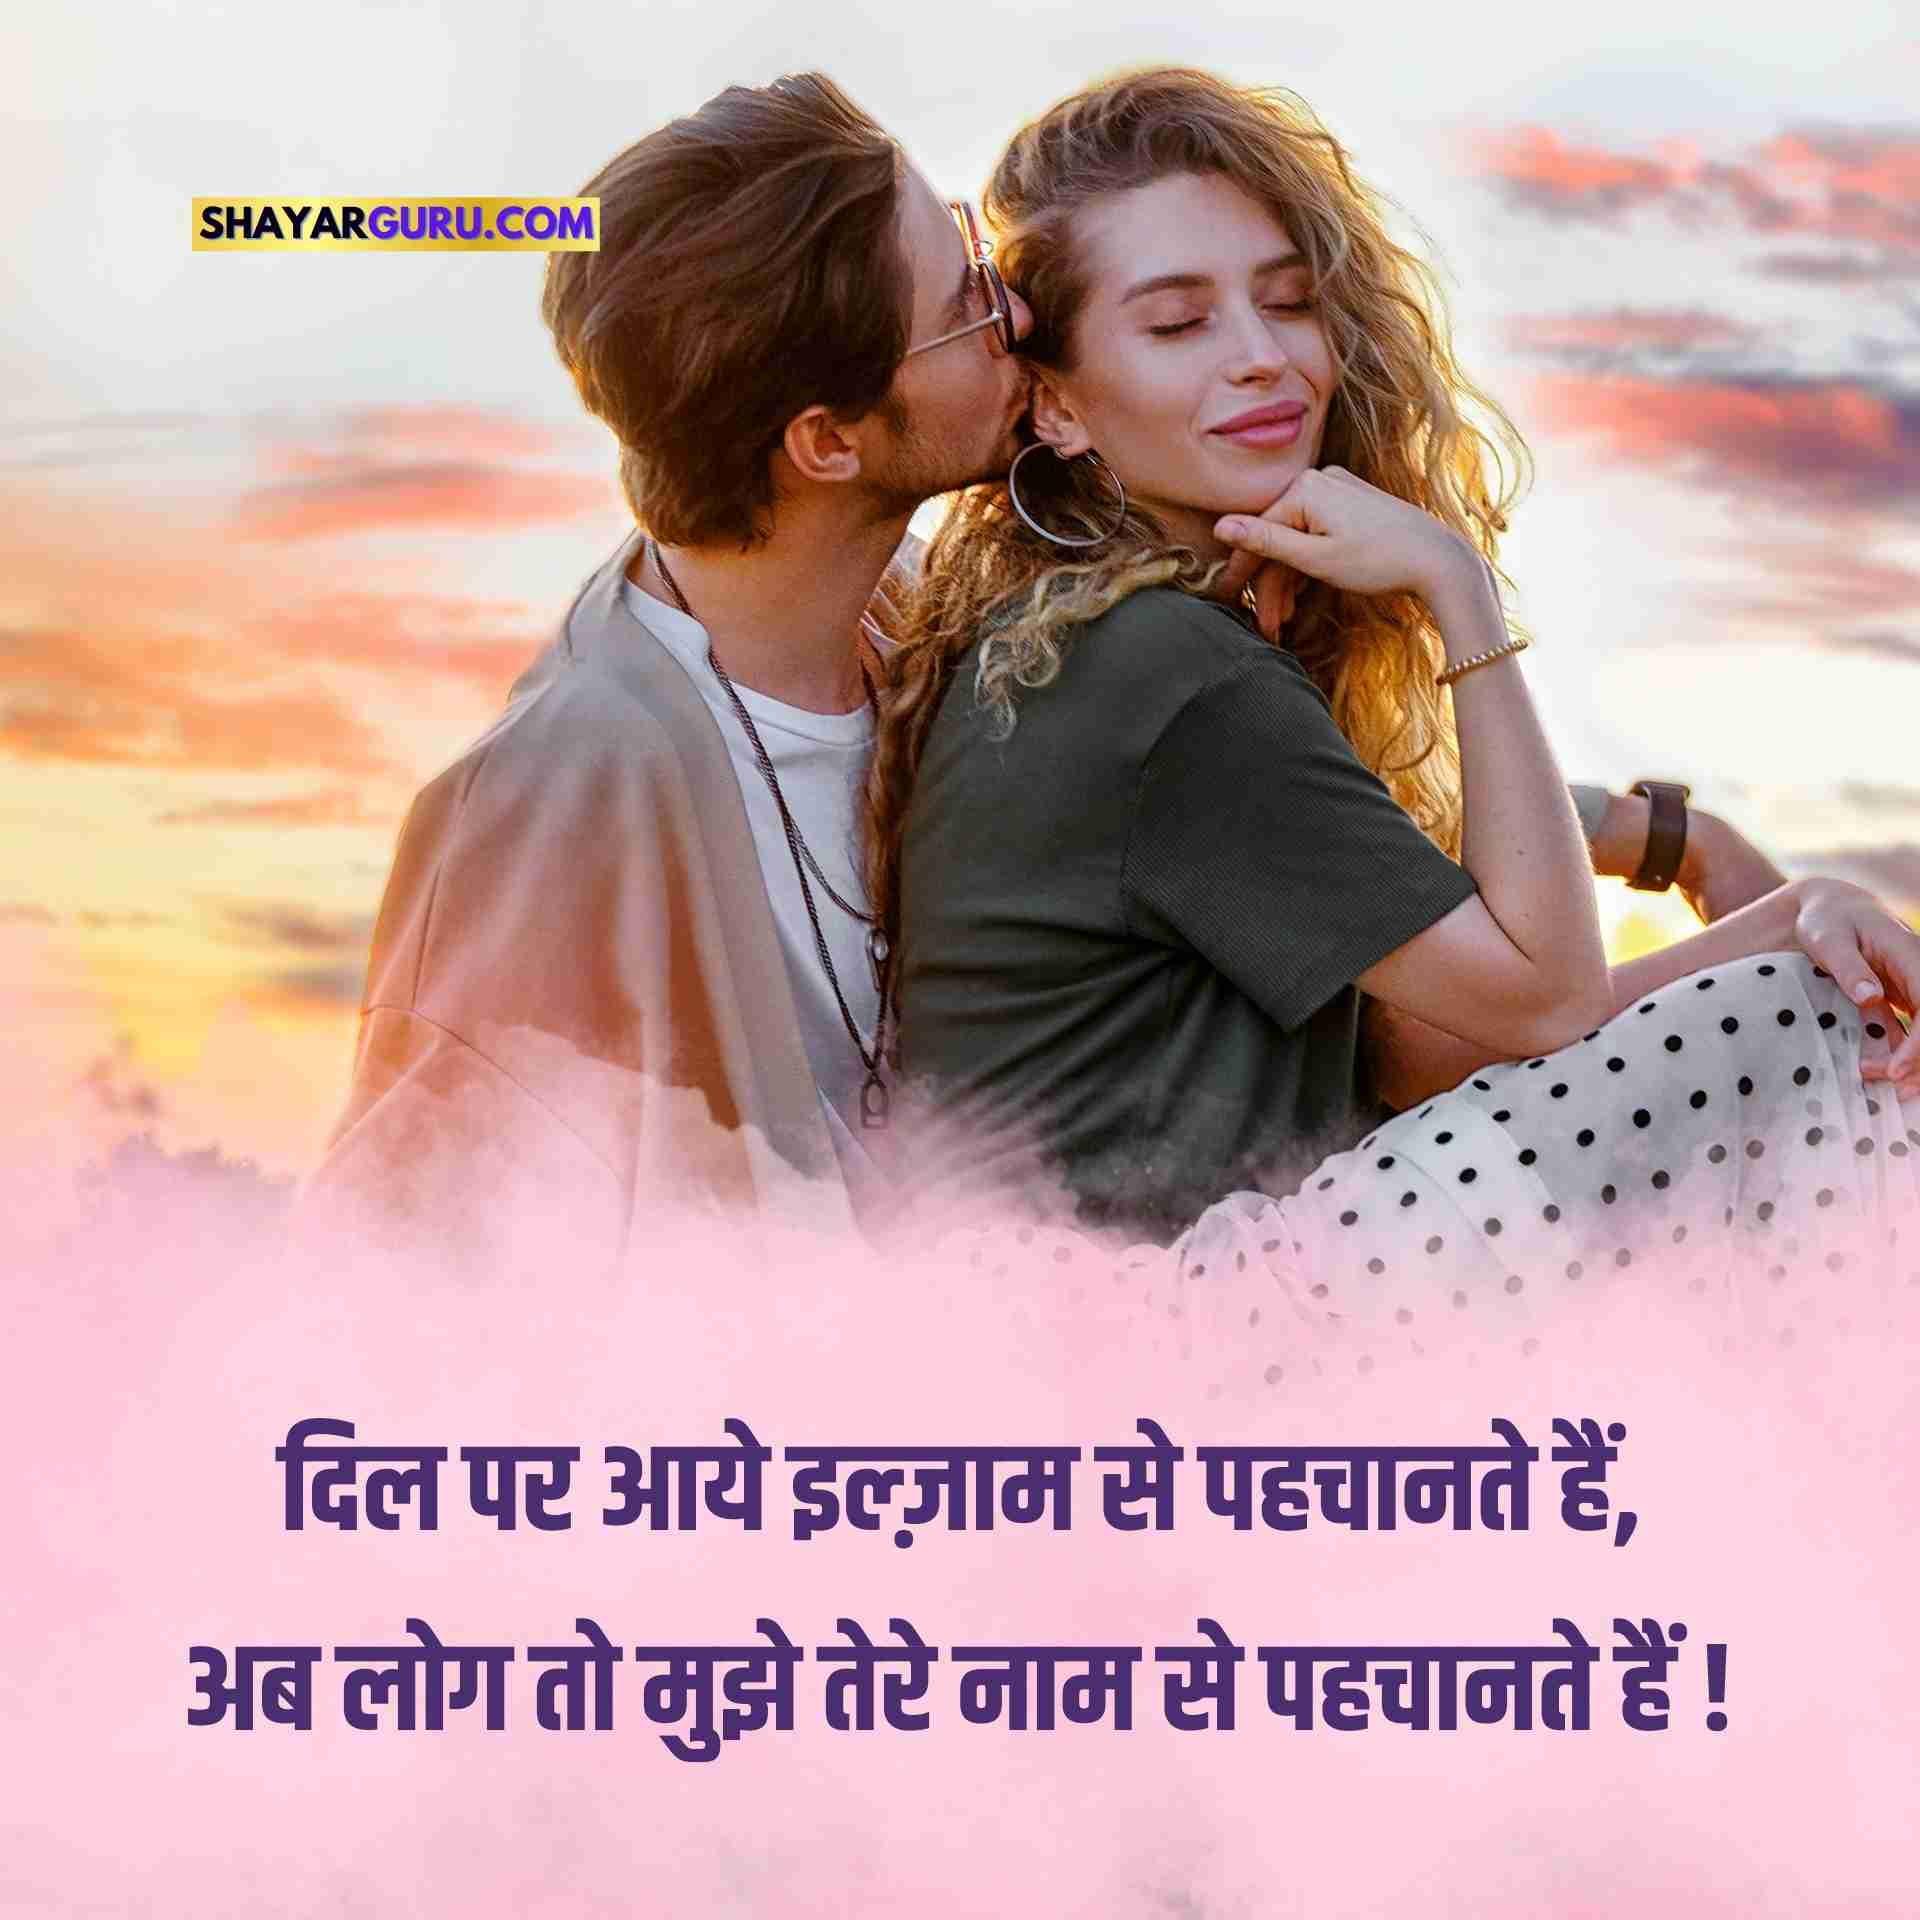 Love Shayari in Hindi for boy friend